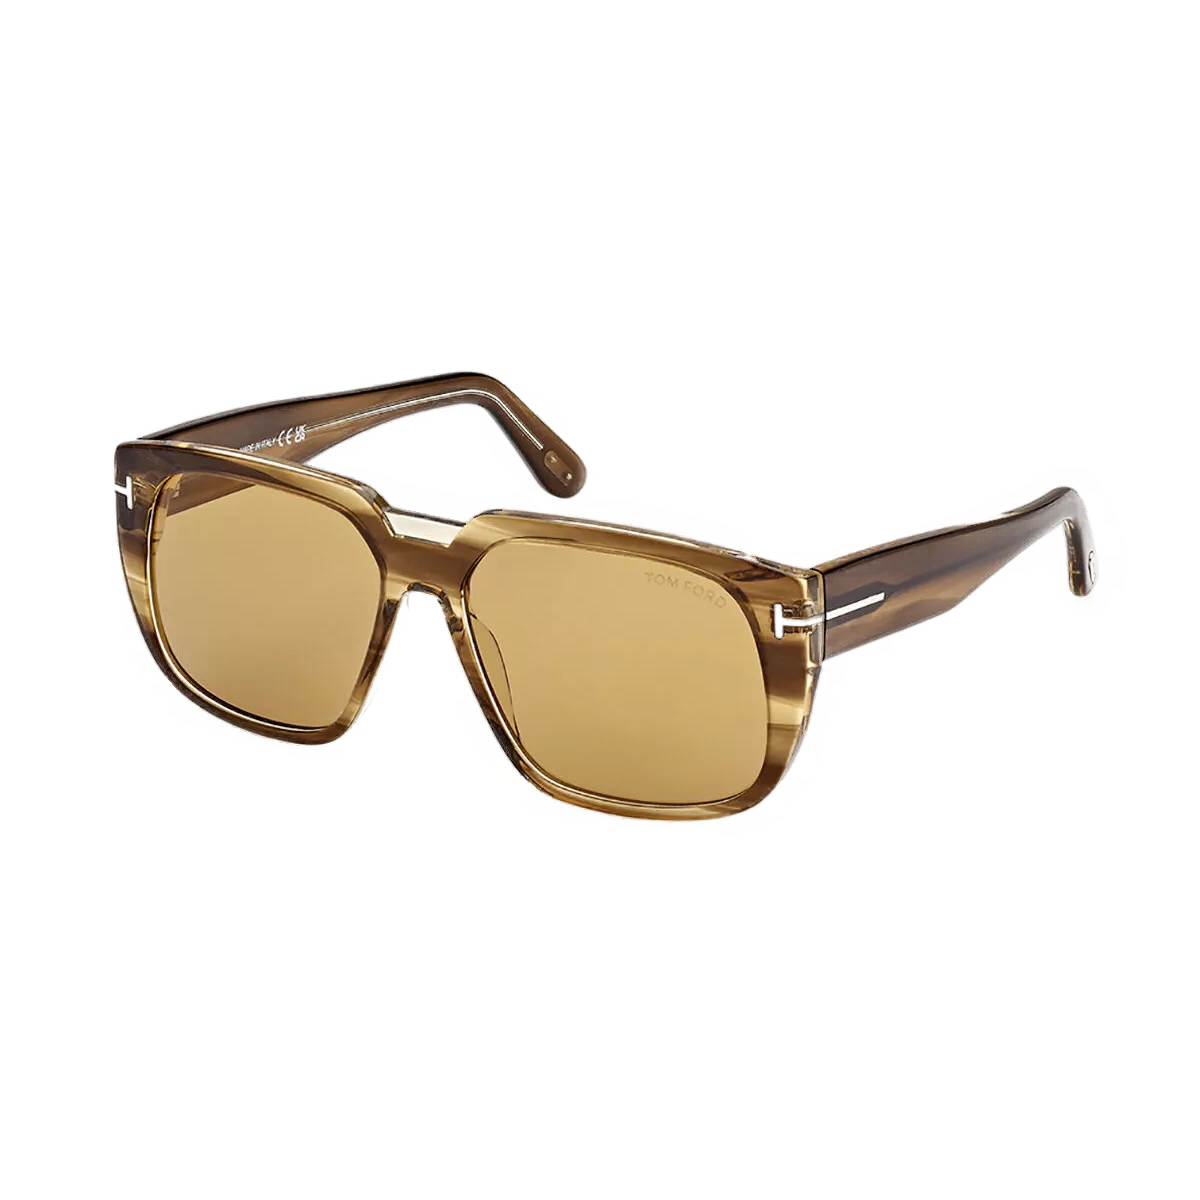 Tom Ford Sunglasses Tom Ford Sunglasses FT1025 55E 56mm Oliver Eyeglasses Eyewear UK USA Australia 